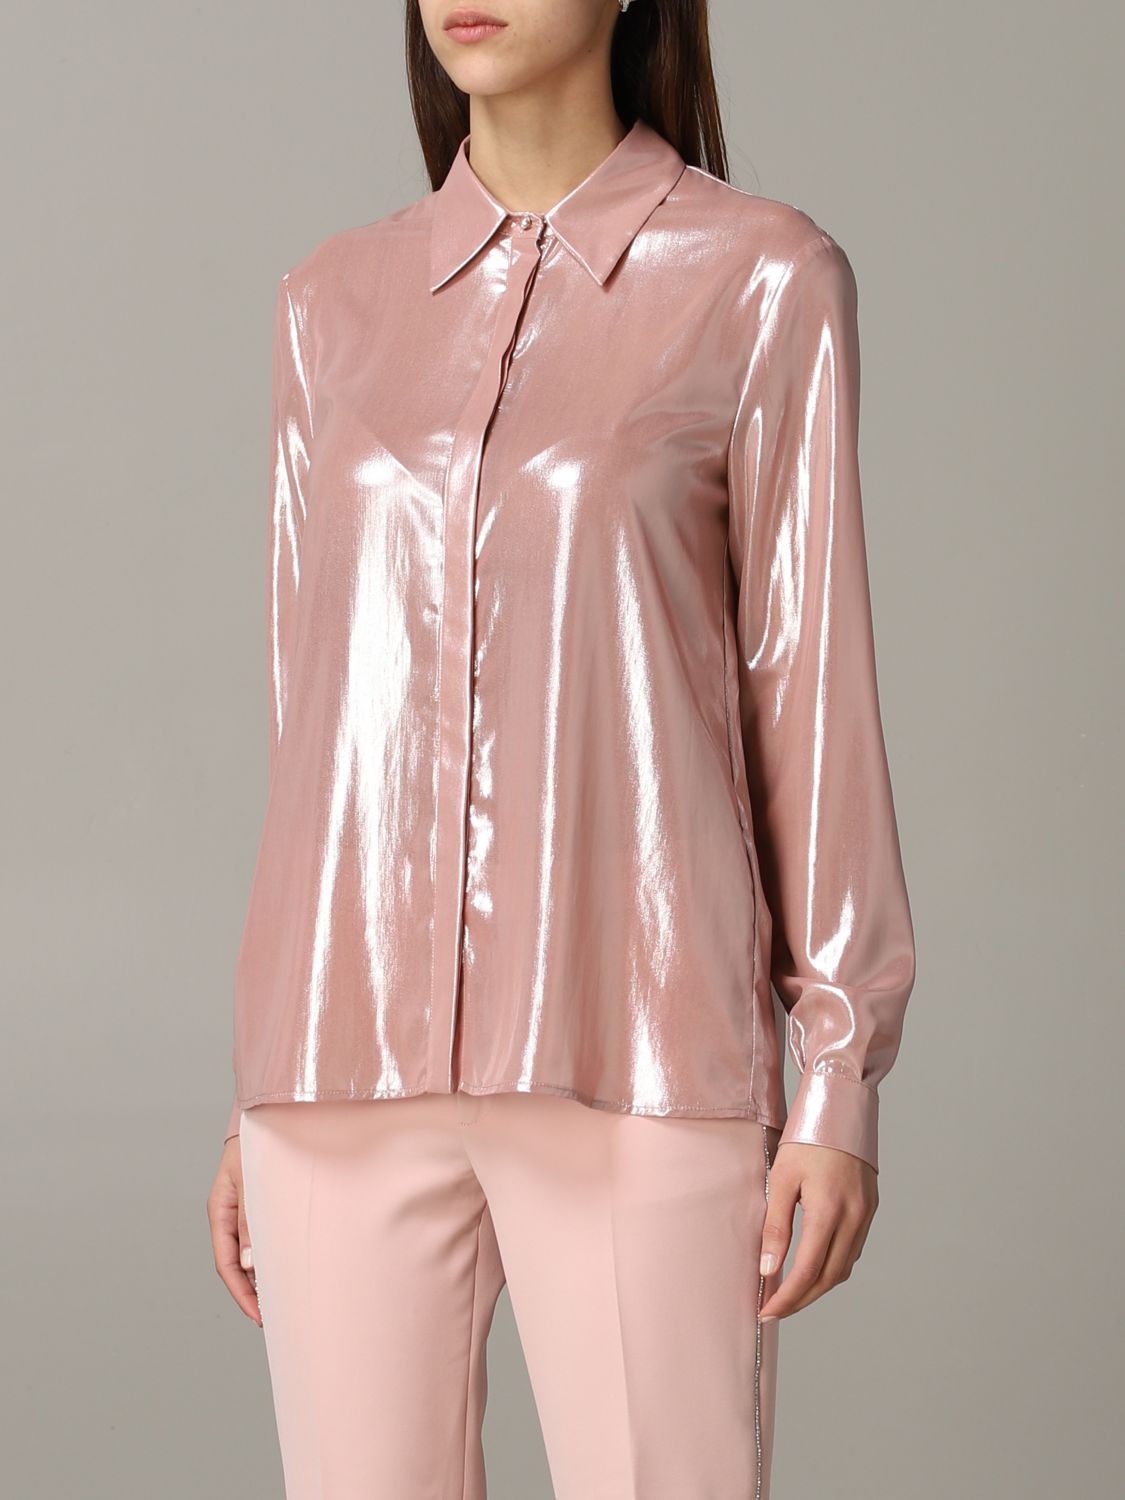 Liu Jo Outlet: shirt in metallic fabric - Blush Pink | Liu Jo